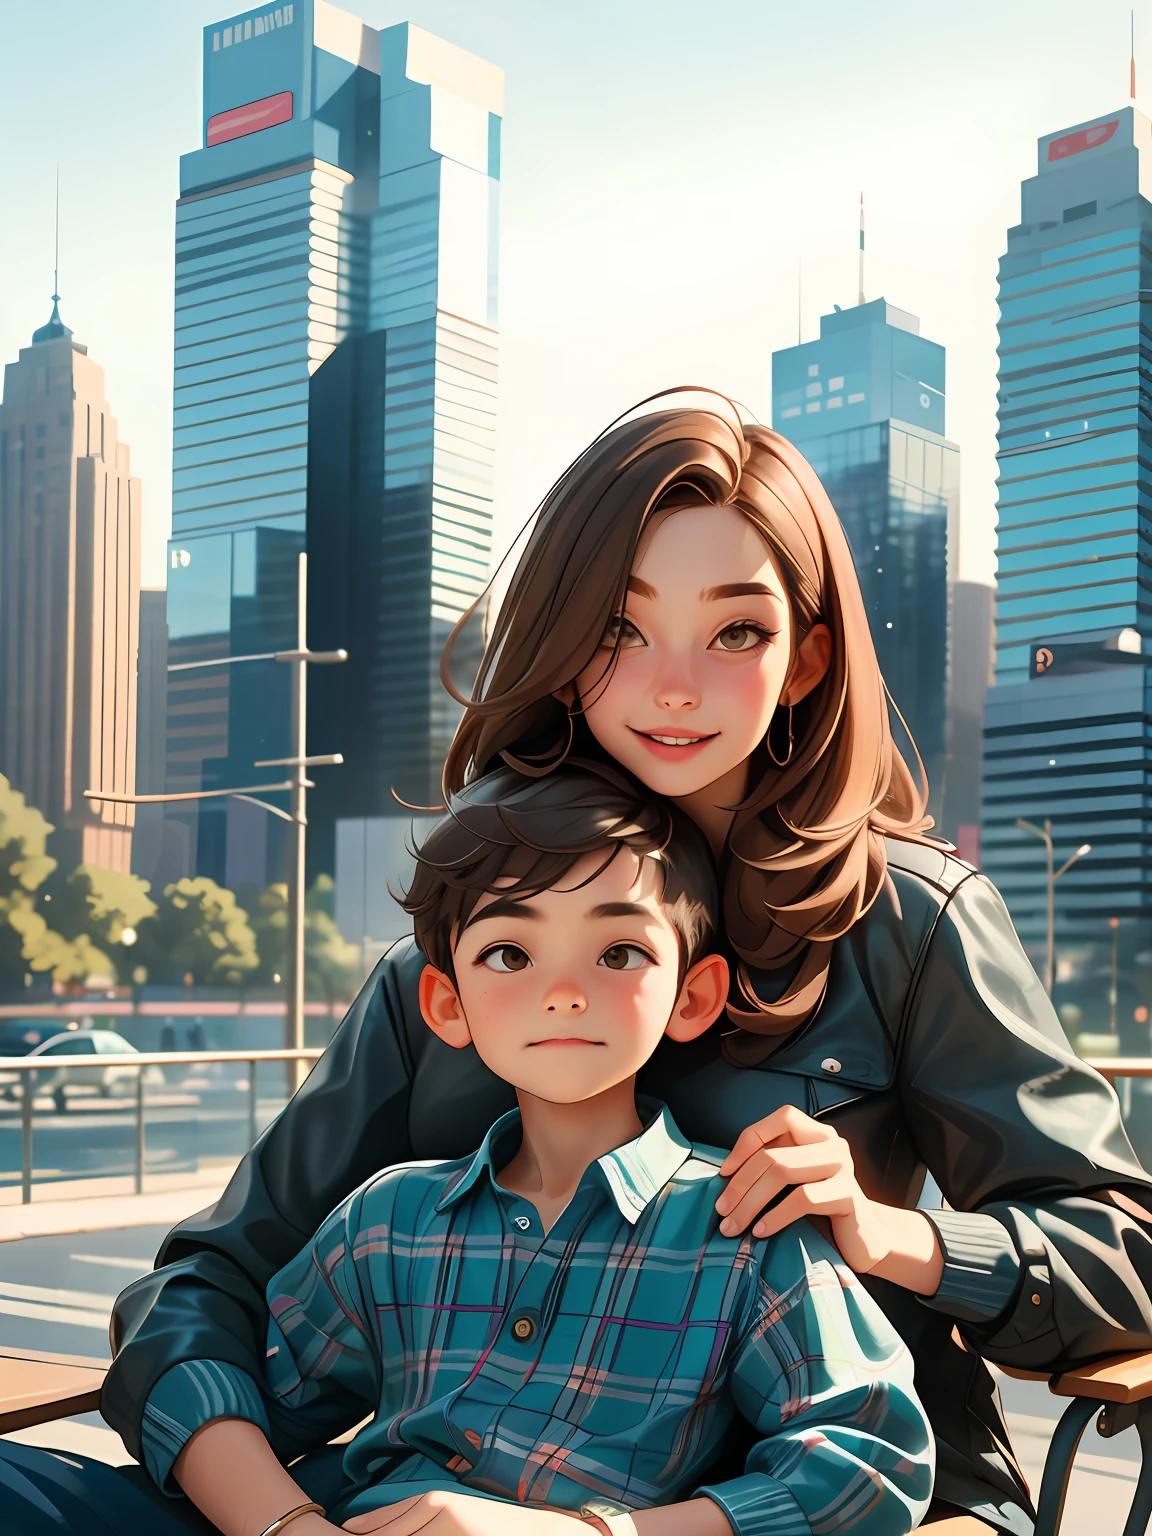 갈색 머리의 6세 소년, 그의 어머니 무릎 위에, 어깨까지 오는 갈색 머리도 있고, 현대적인 건물이 가득한 도시에서